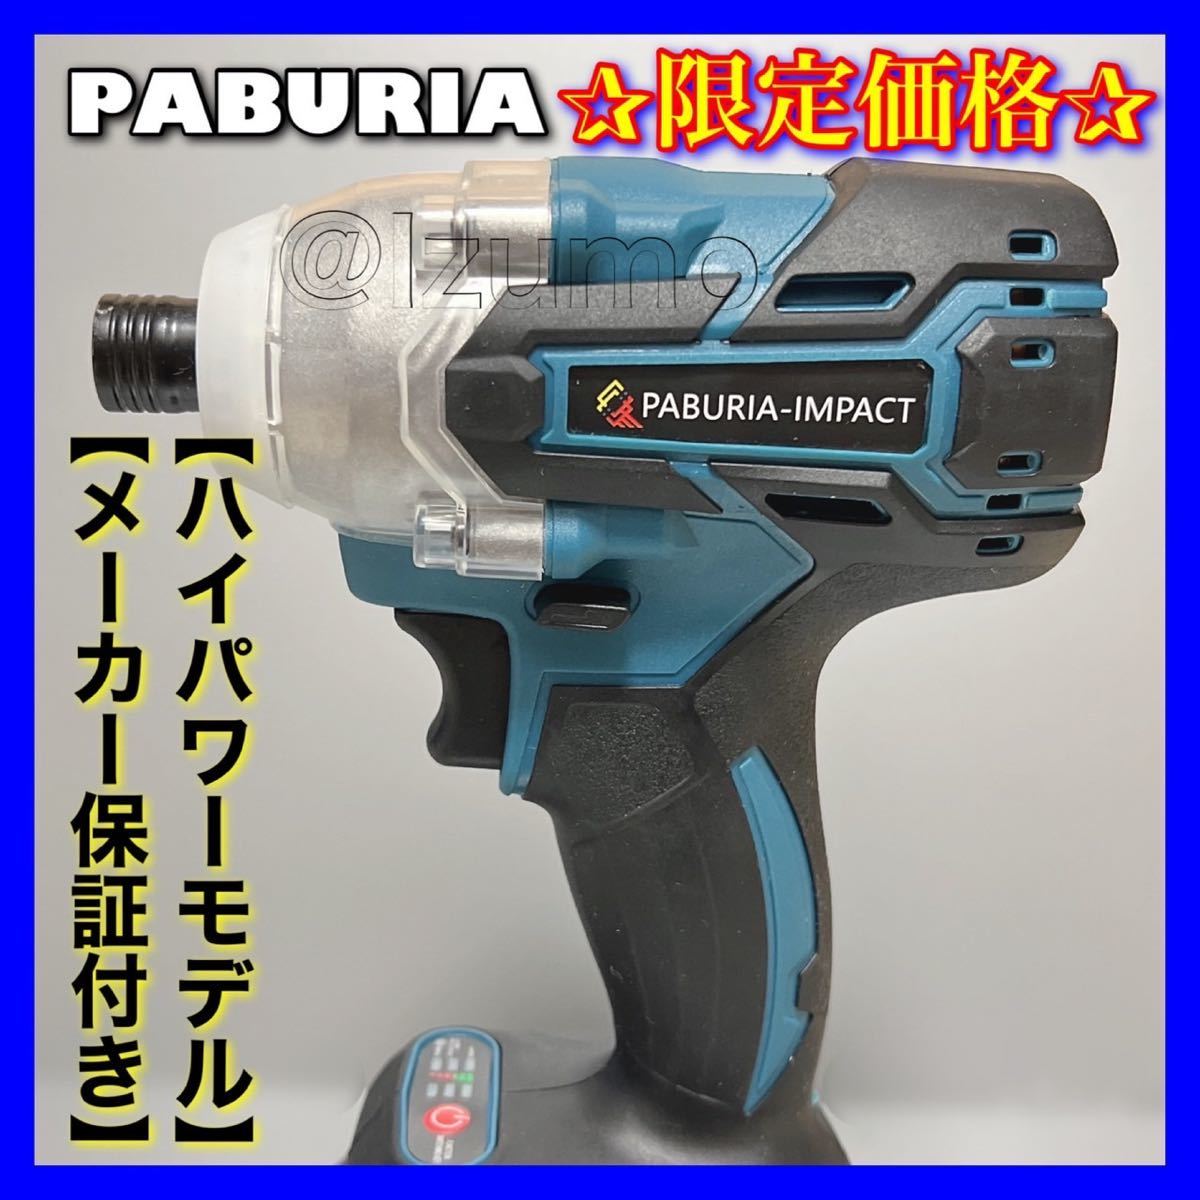 【新型BLモデル】 PABURIA 新品マキタ 互換 18Vインパクトドライバー 即日発送